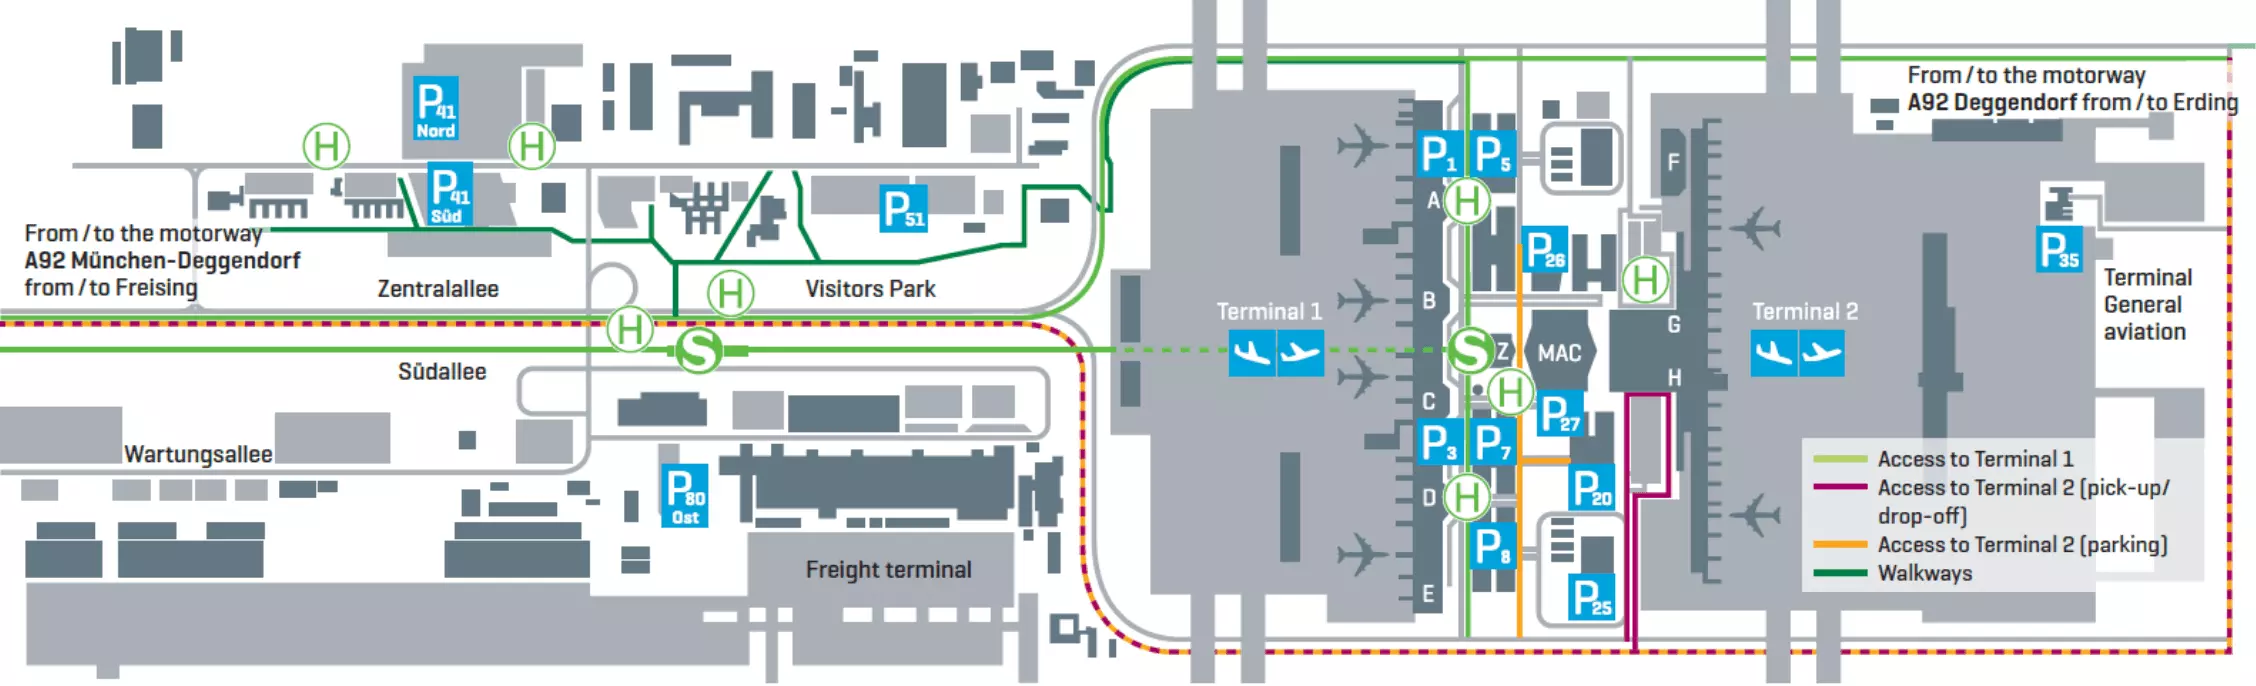 Аэропорт мюнхена franz josef strauß — как добраться в центр города, схема и терминалы, онлайн табло и авиакомпании